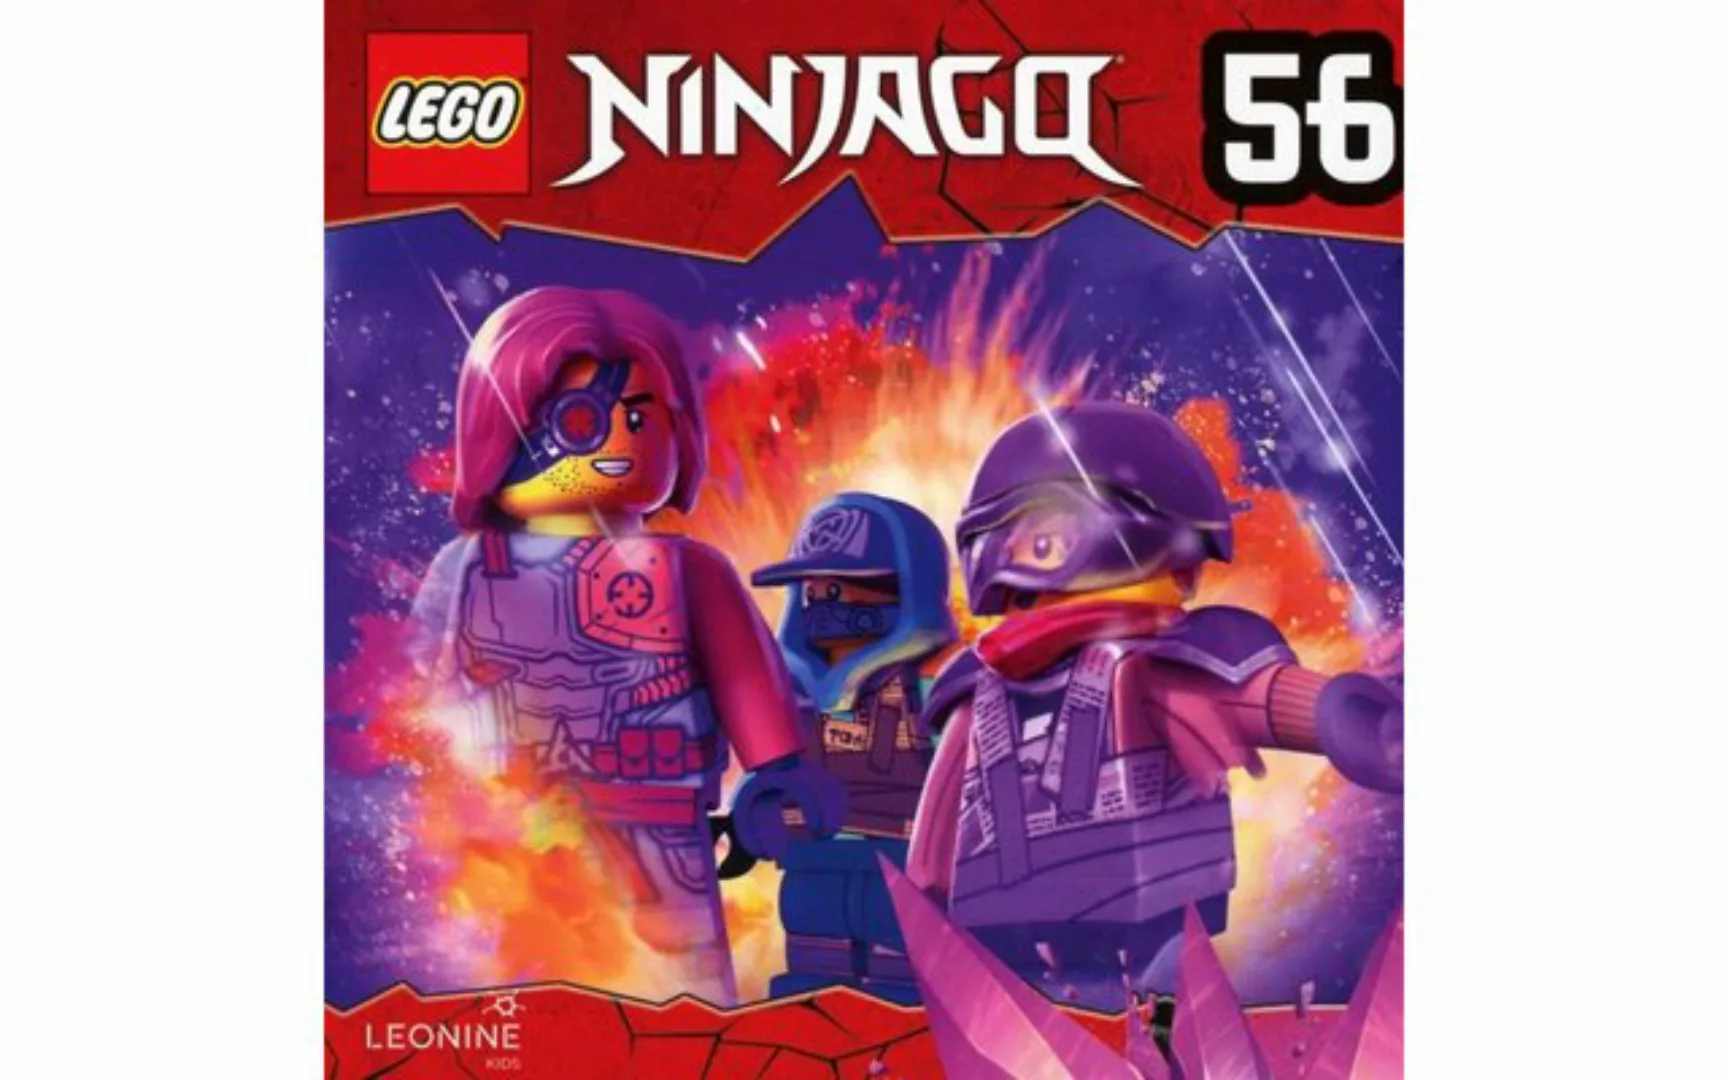 Leonine Hörspiel-CD Lego Ninjago (56) günstig online kaufen